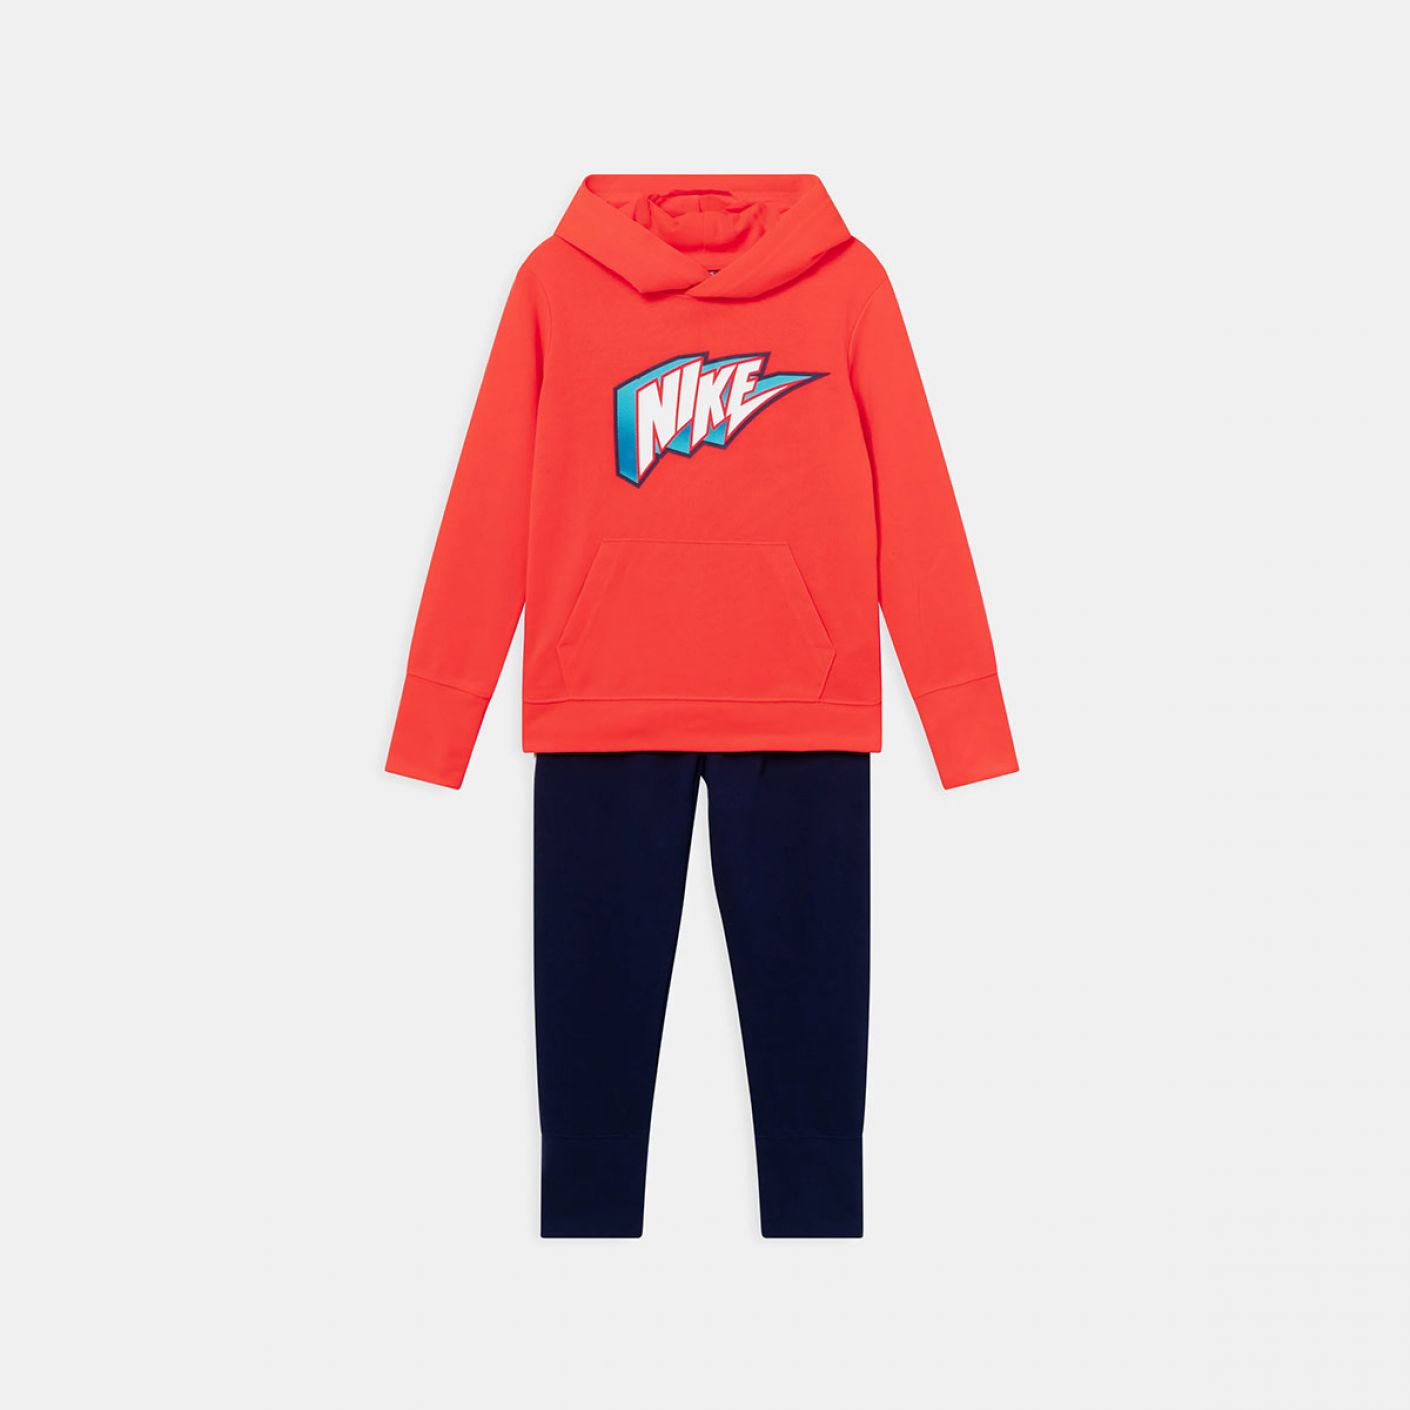 Nike Completo GHG Rosso-Blu da Bambino